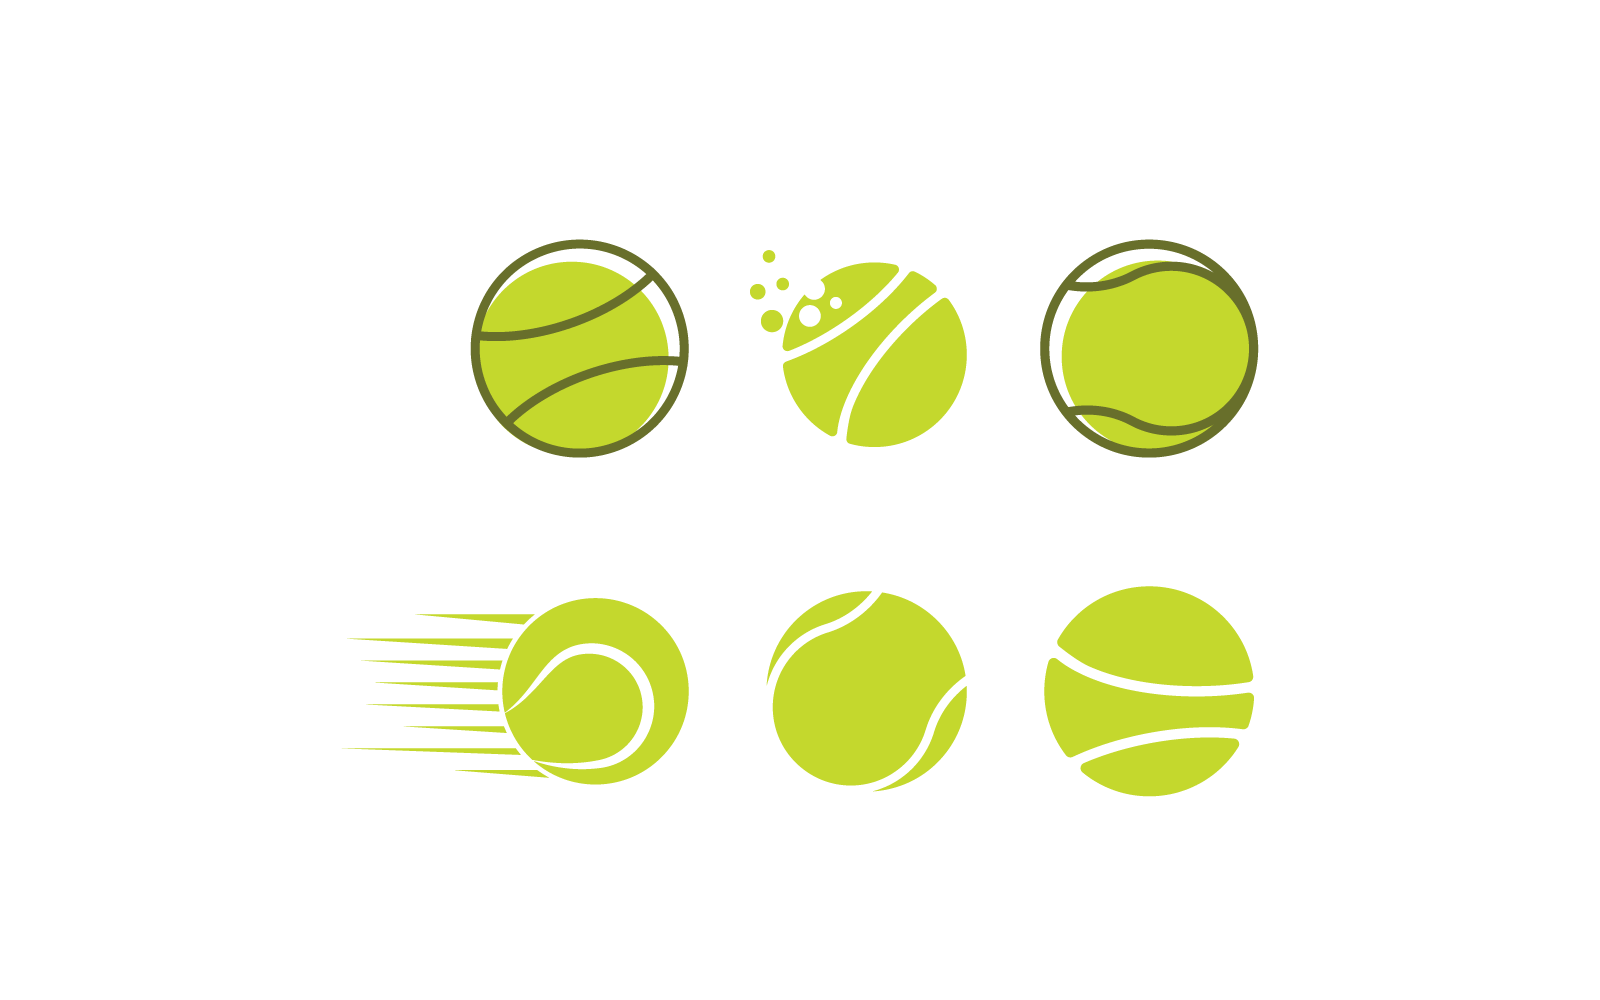 Tenis topu illüstrasyon logo vektör düz tasarım şablonu